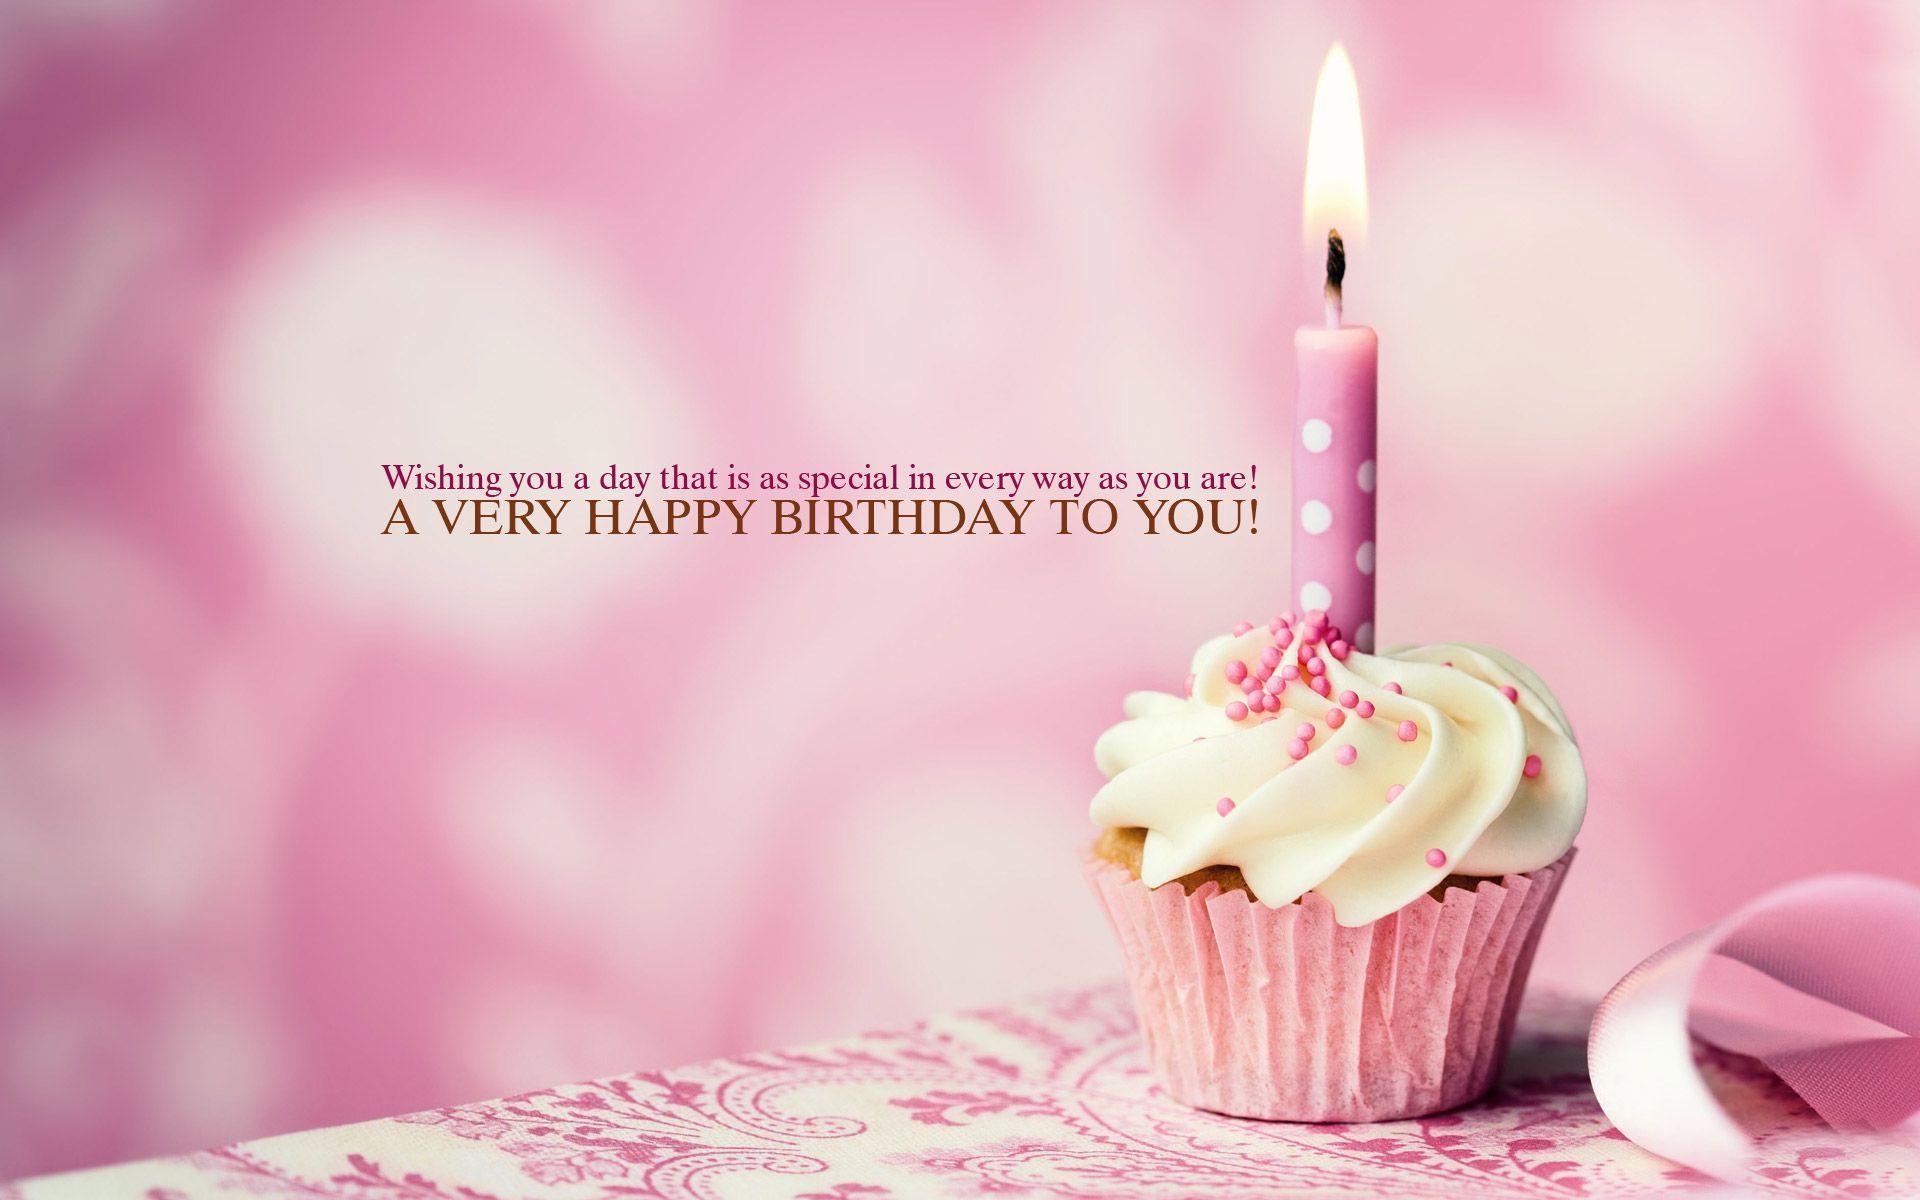 Những lời chúc mừng sinh nhật 1920x1200 - Hình ảnh Lớn Miễn phí.  Bánh cupcake chúc mừng sinh nhật, Hình ảnh chúc mừng sinh nhật dễ thương, Thiệp chúc mừng sinh nhật